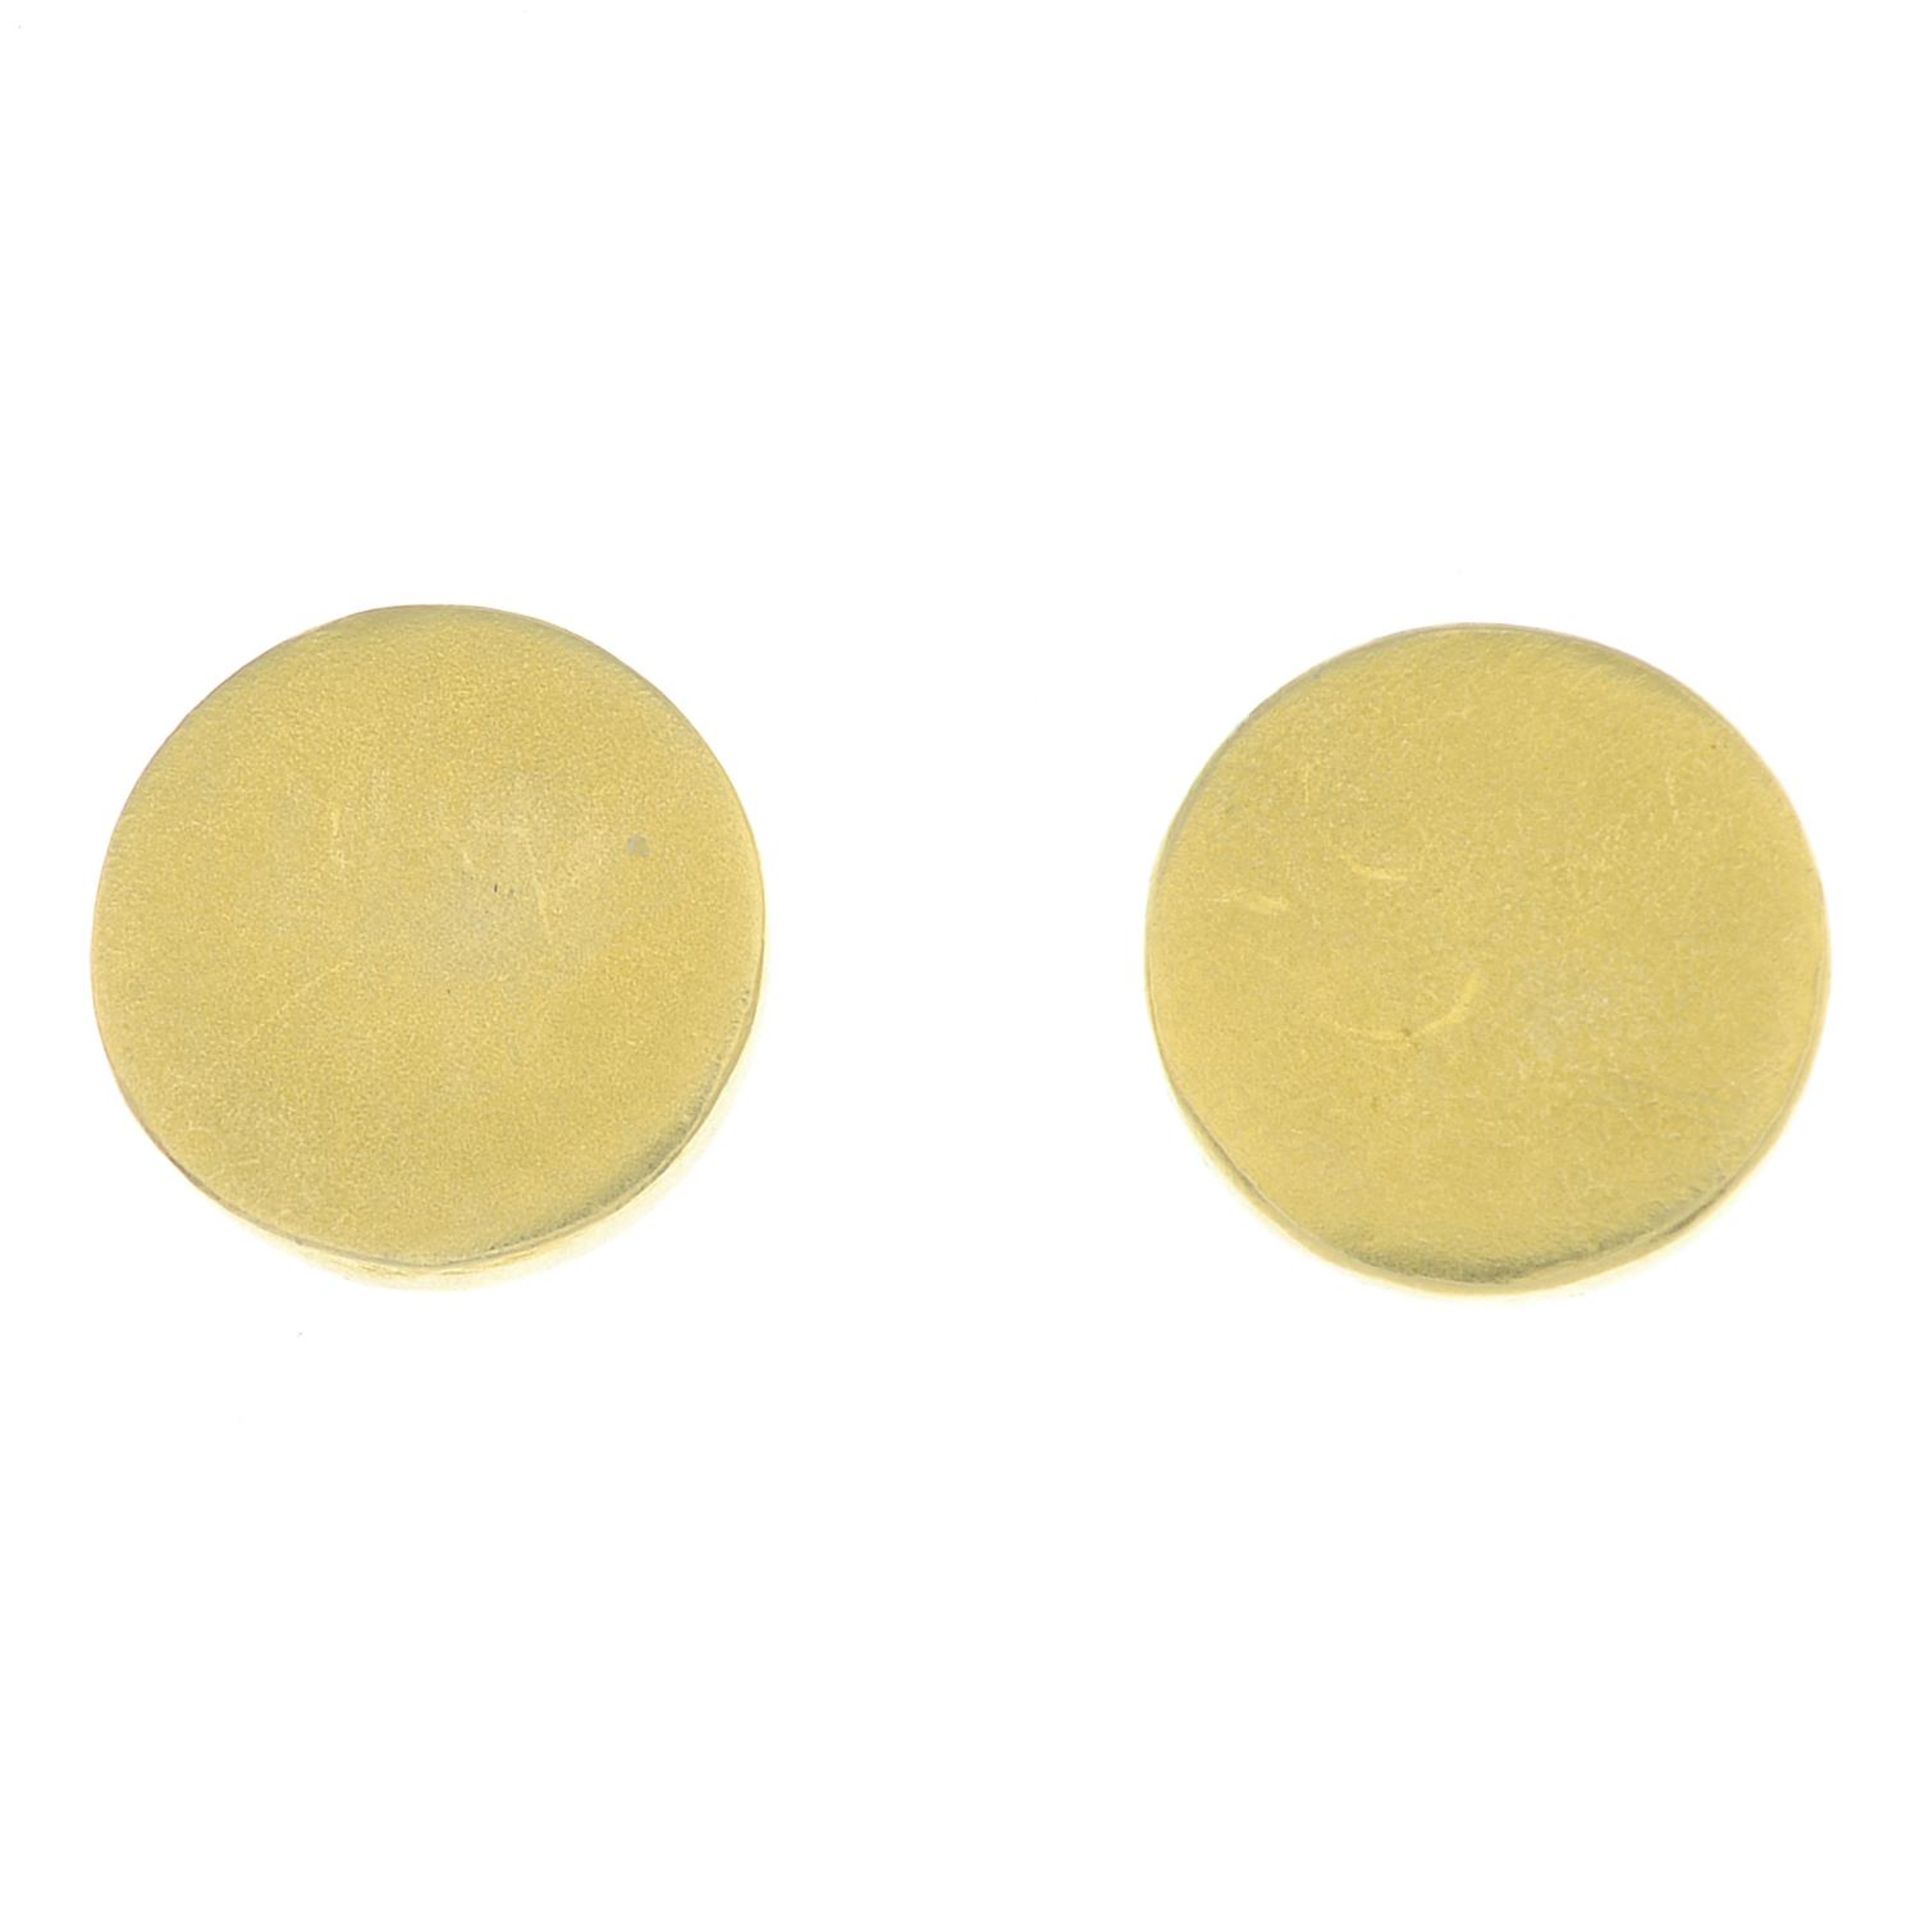 A pair of circular stud earrings.Stamped 18K 750.